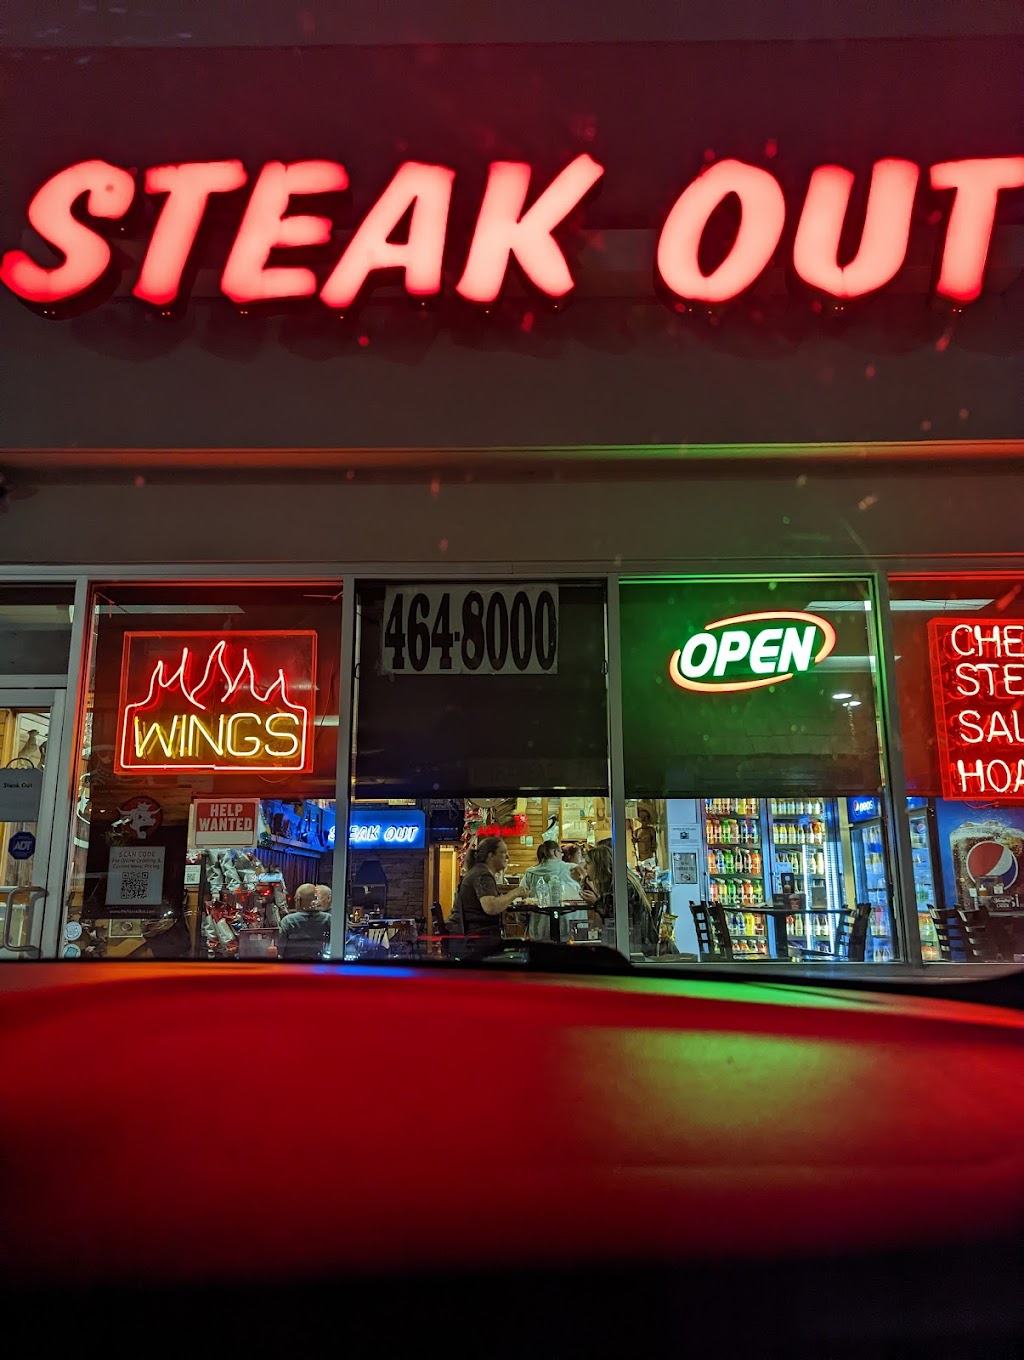 Steak Out | 641 Woodbury Glassboro Rd, Sewell, NJ 08080 | Phone: (856) 464-8000